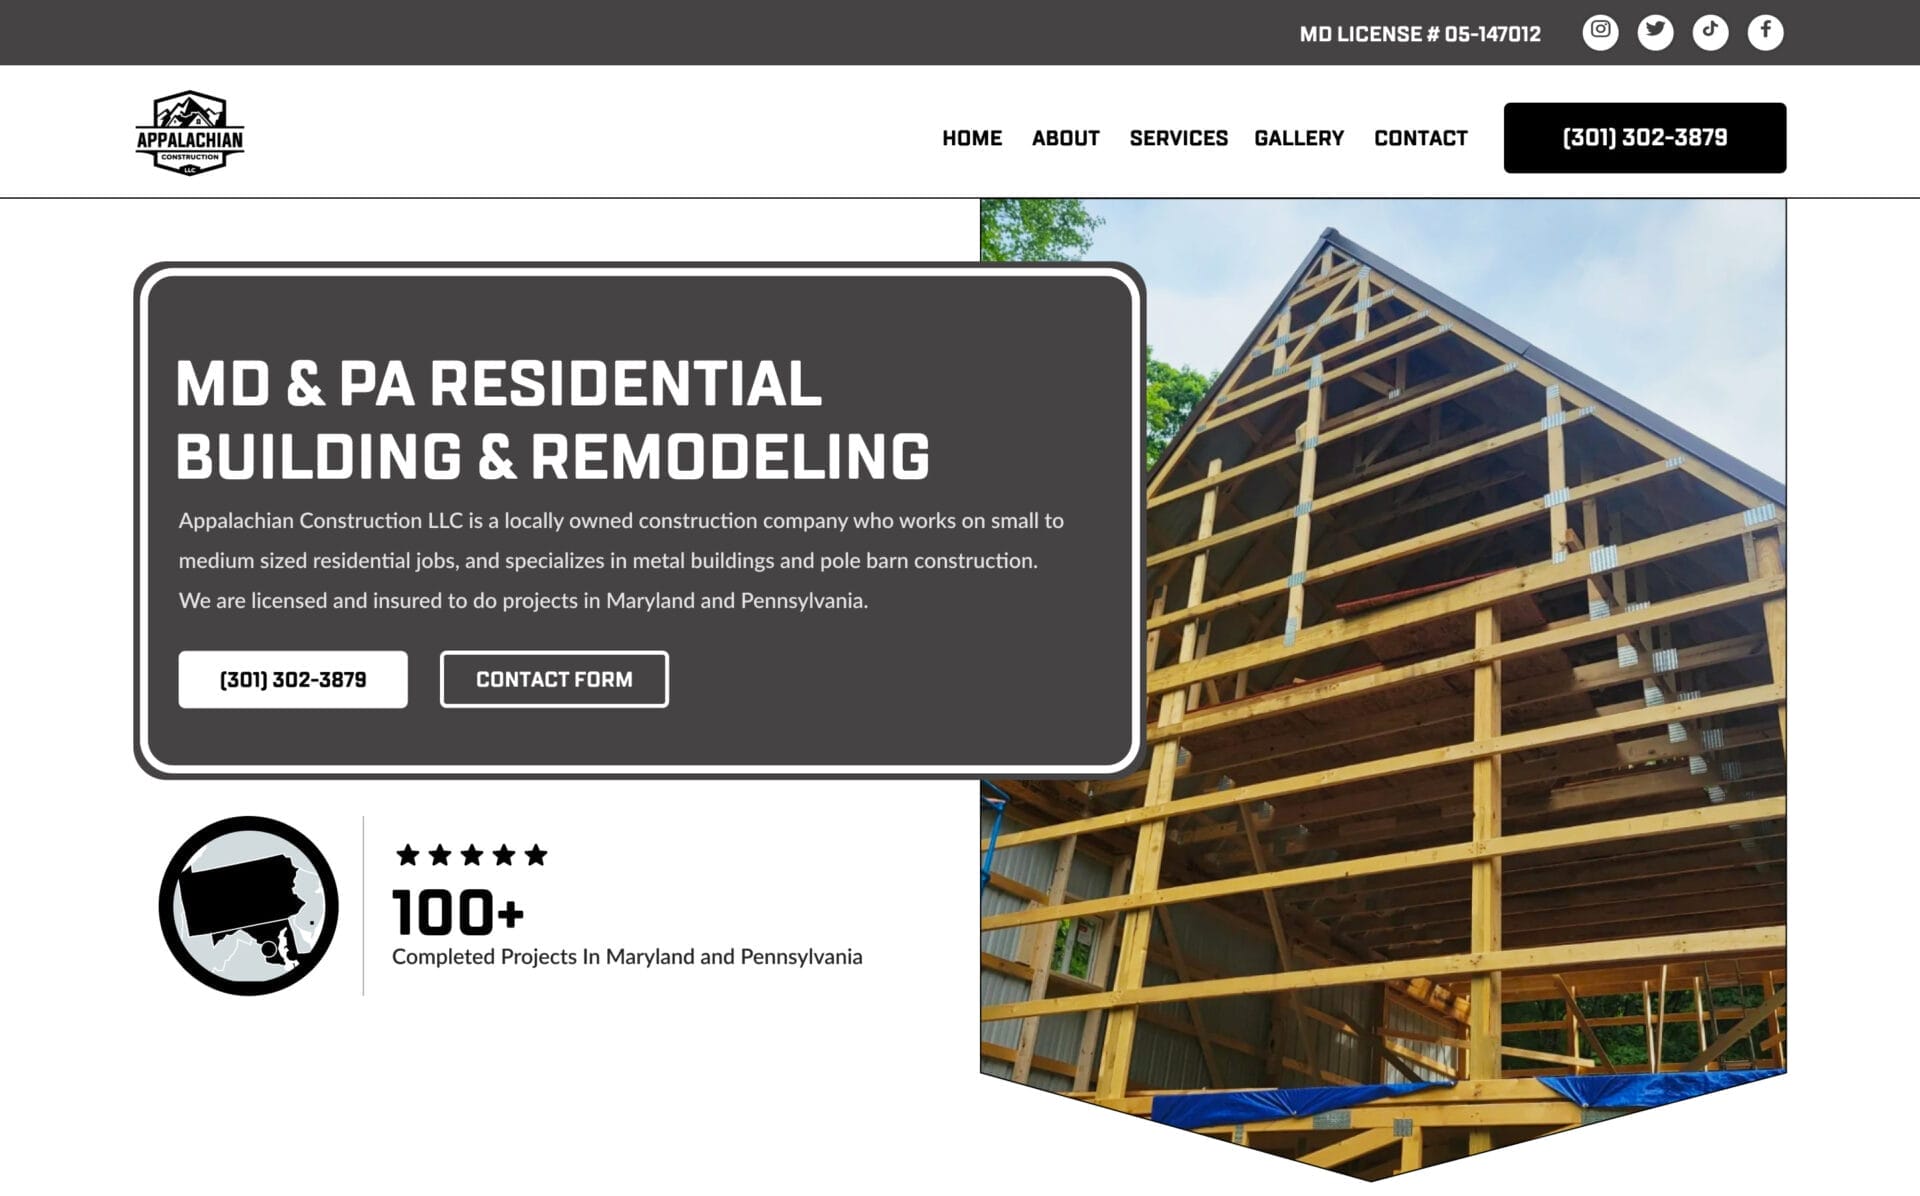 Md & r residential building & remodeling website design.